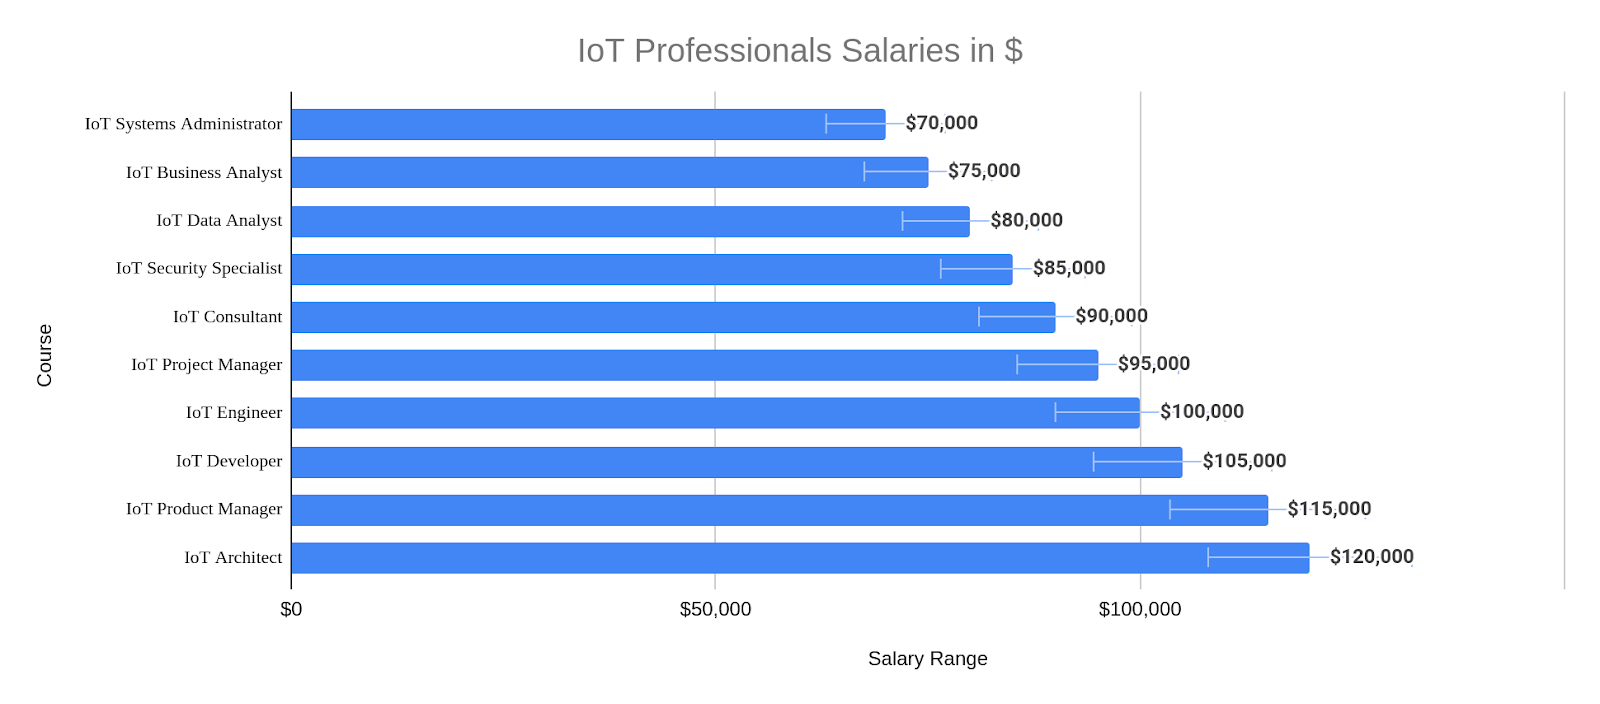 IoT Professionals Salaries in $